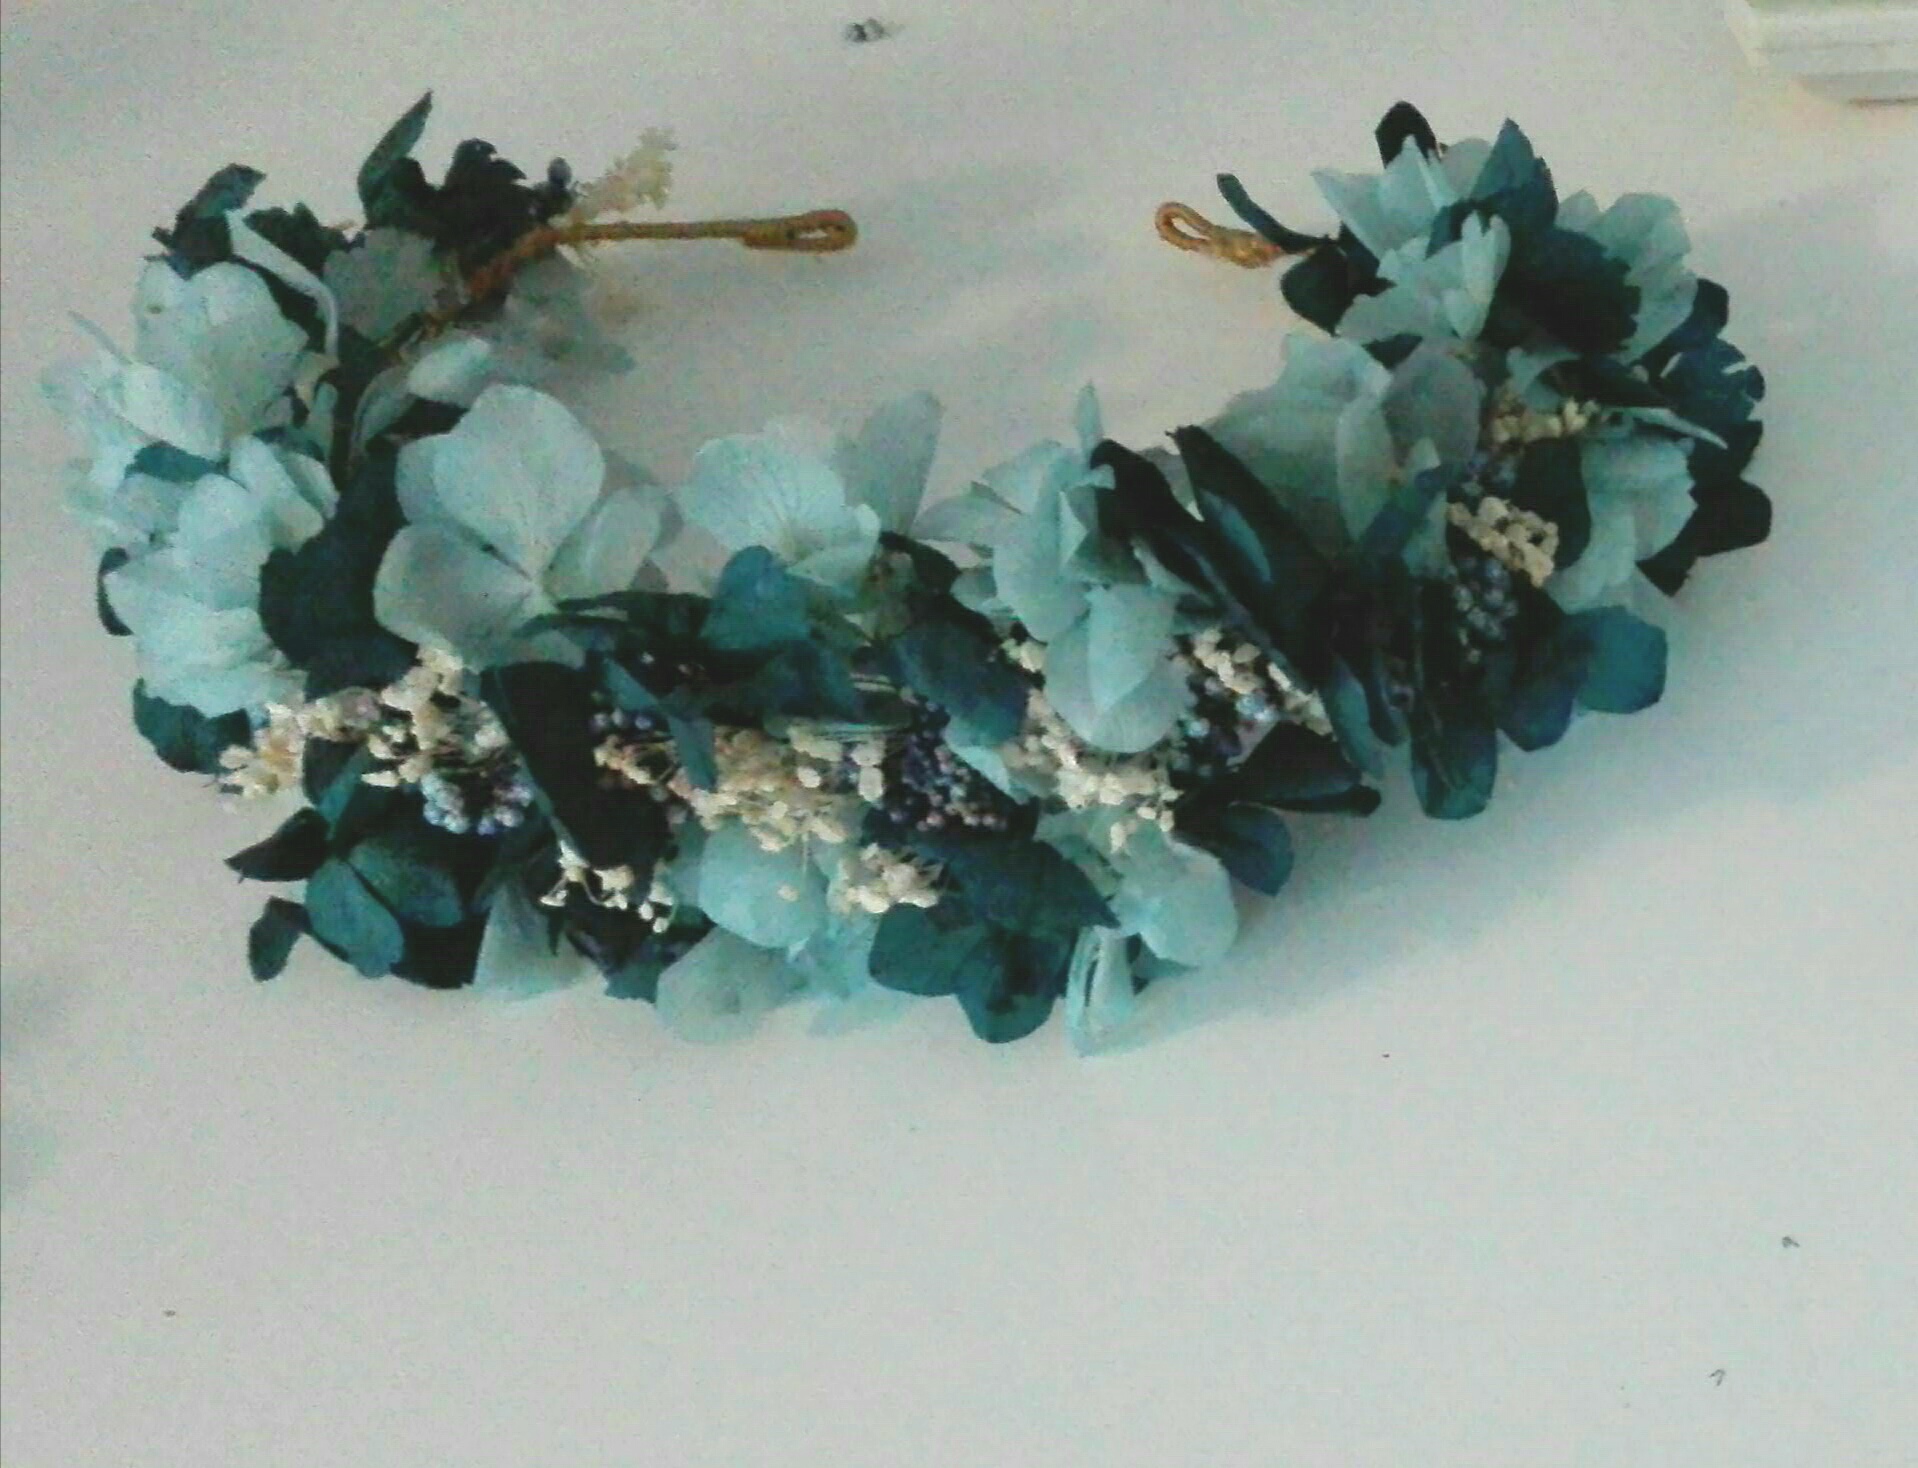 corona de flores arras niños boda azules paniculata cantuc tocados a medida